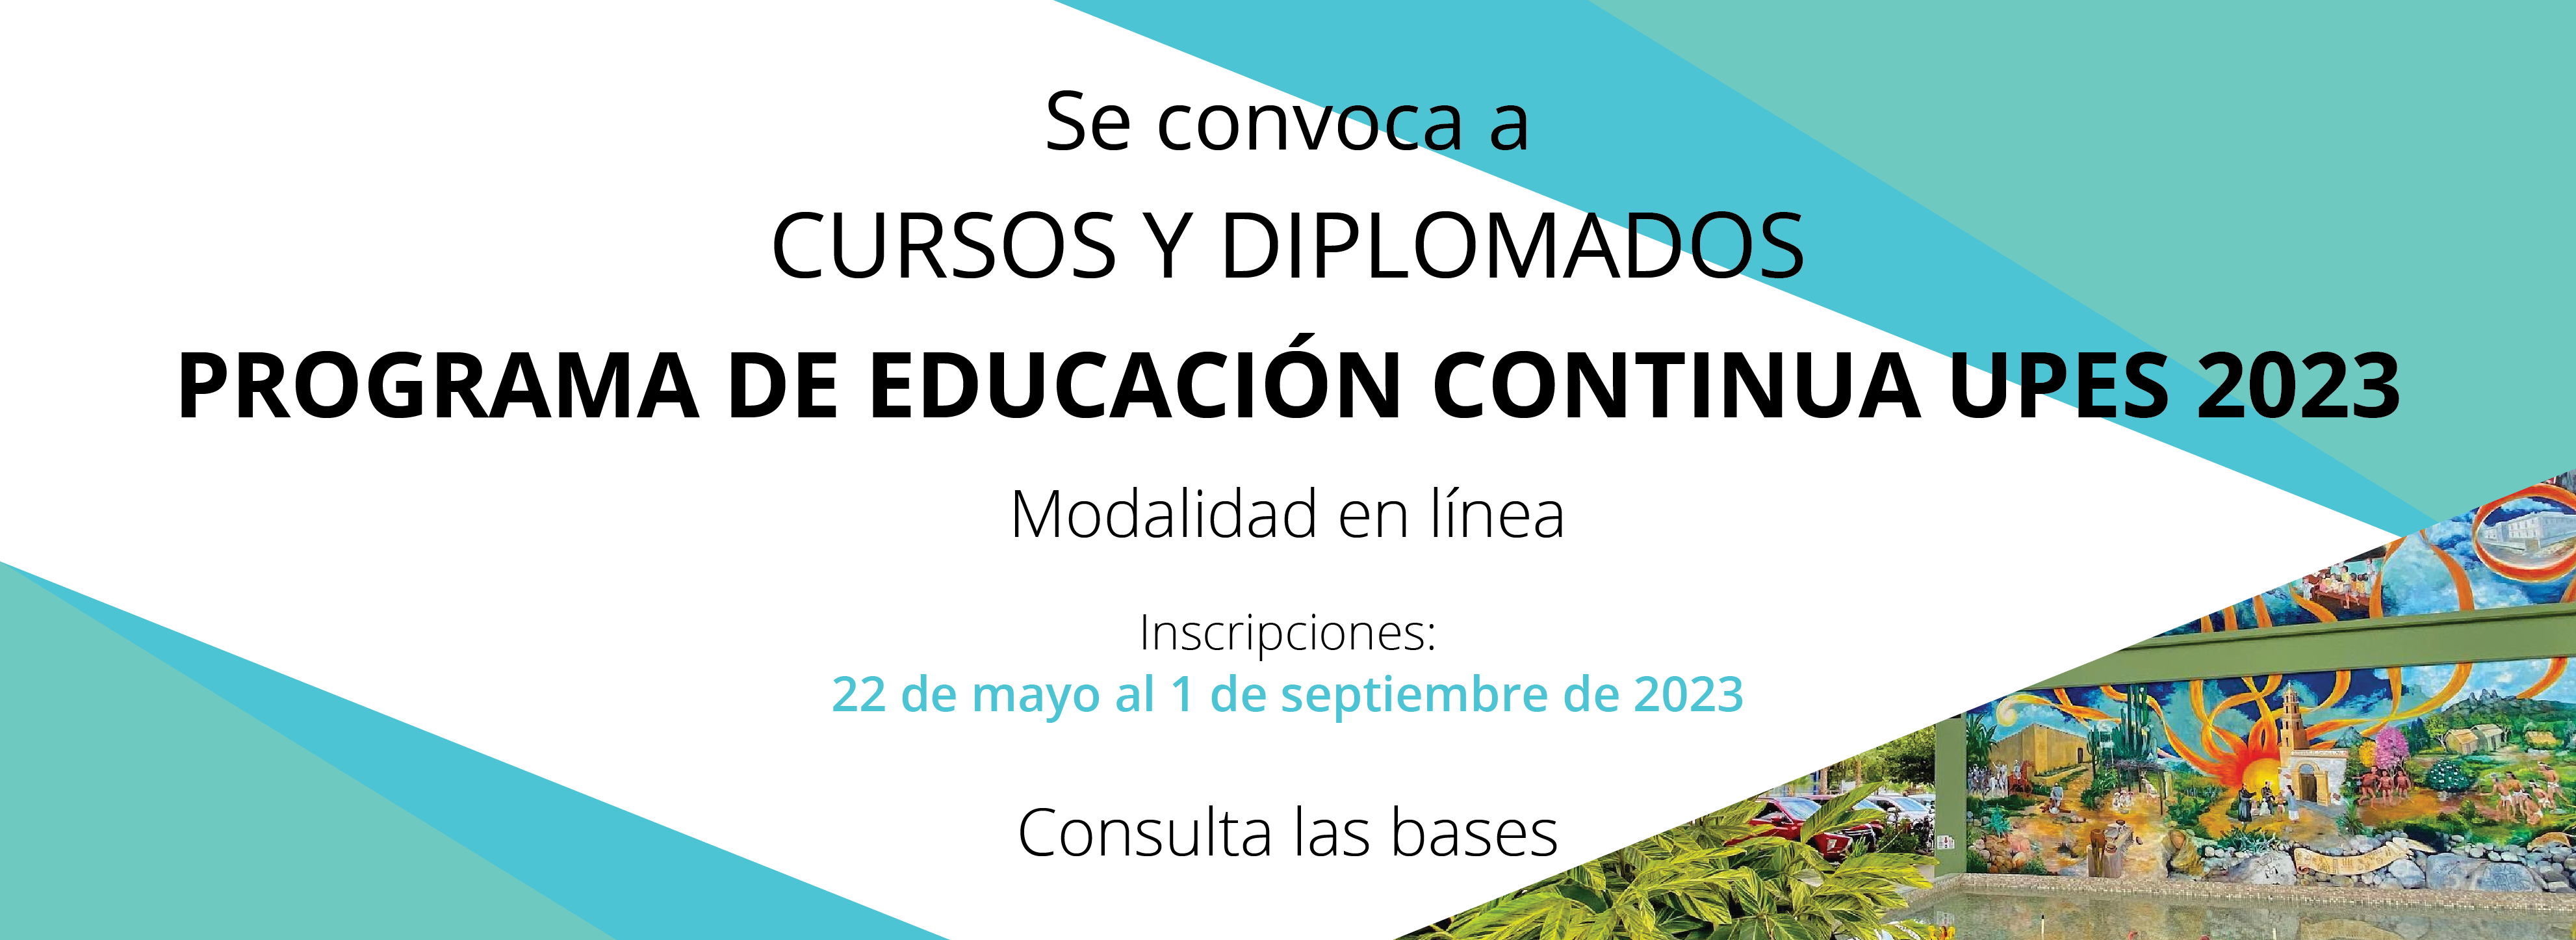 Cursos_y_diplomados_Educacion_Continua_Mayo_2023_banner_web